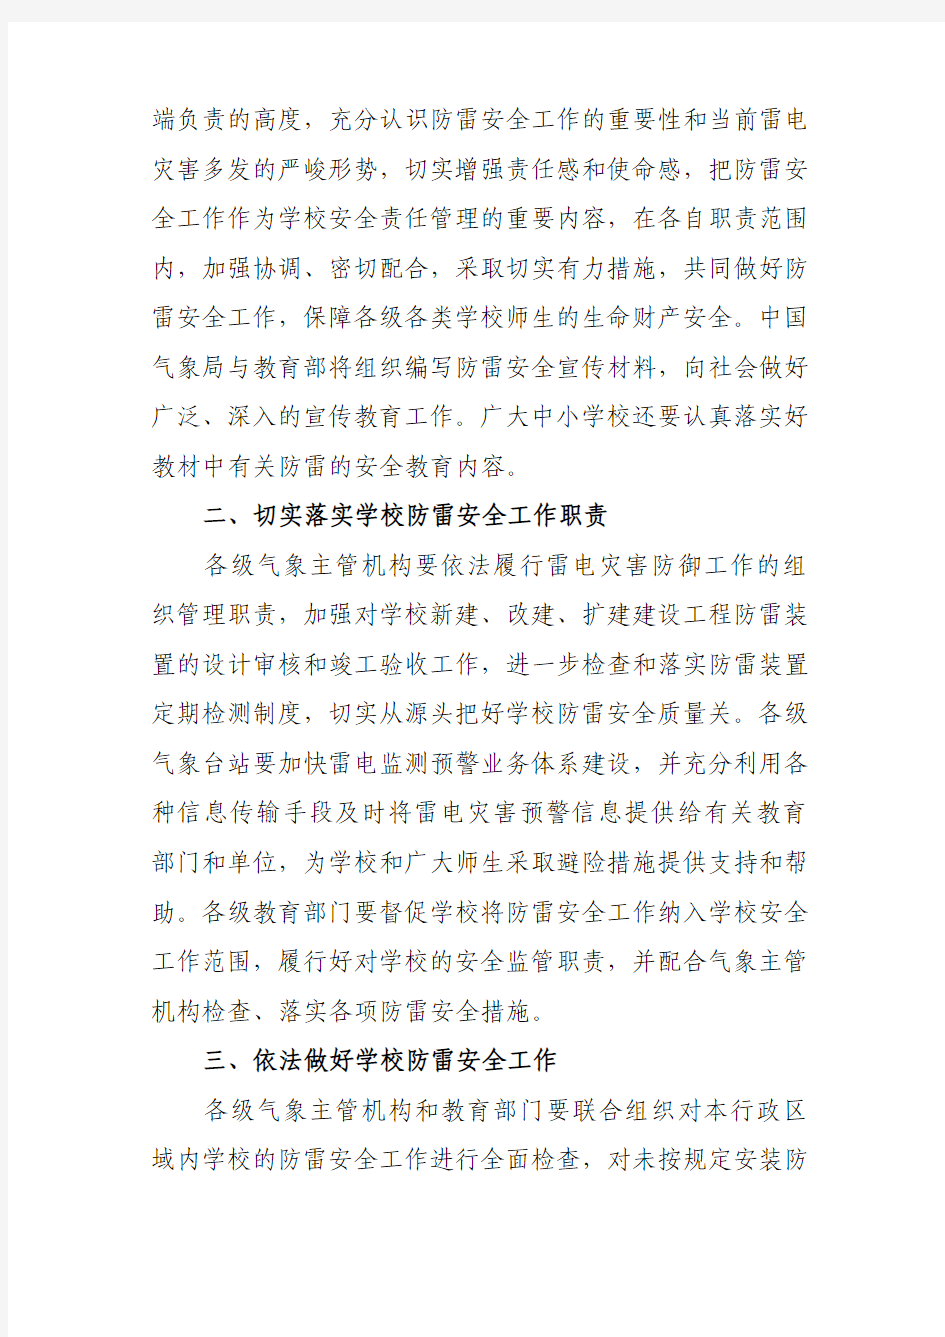 中国气象局 教育部关于加强学校防雷安全工作的紧急通知